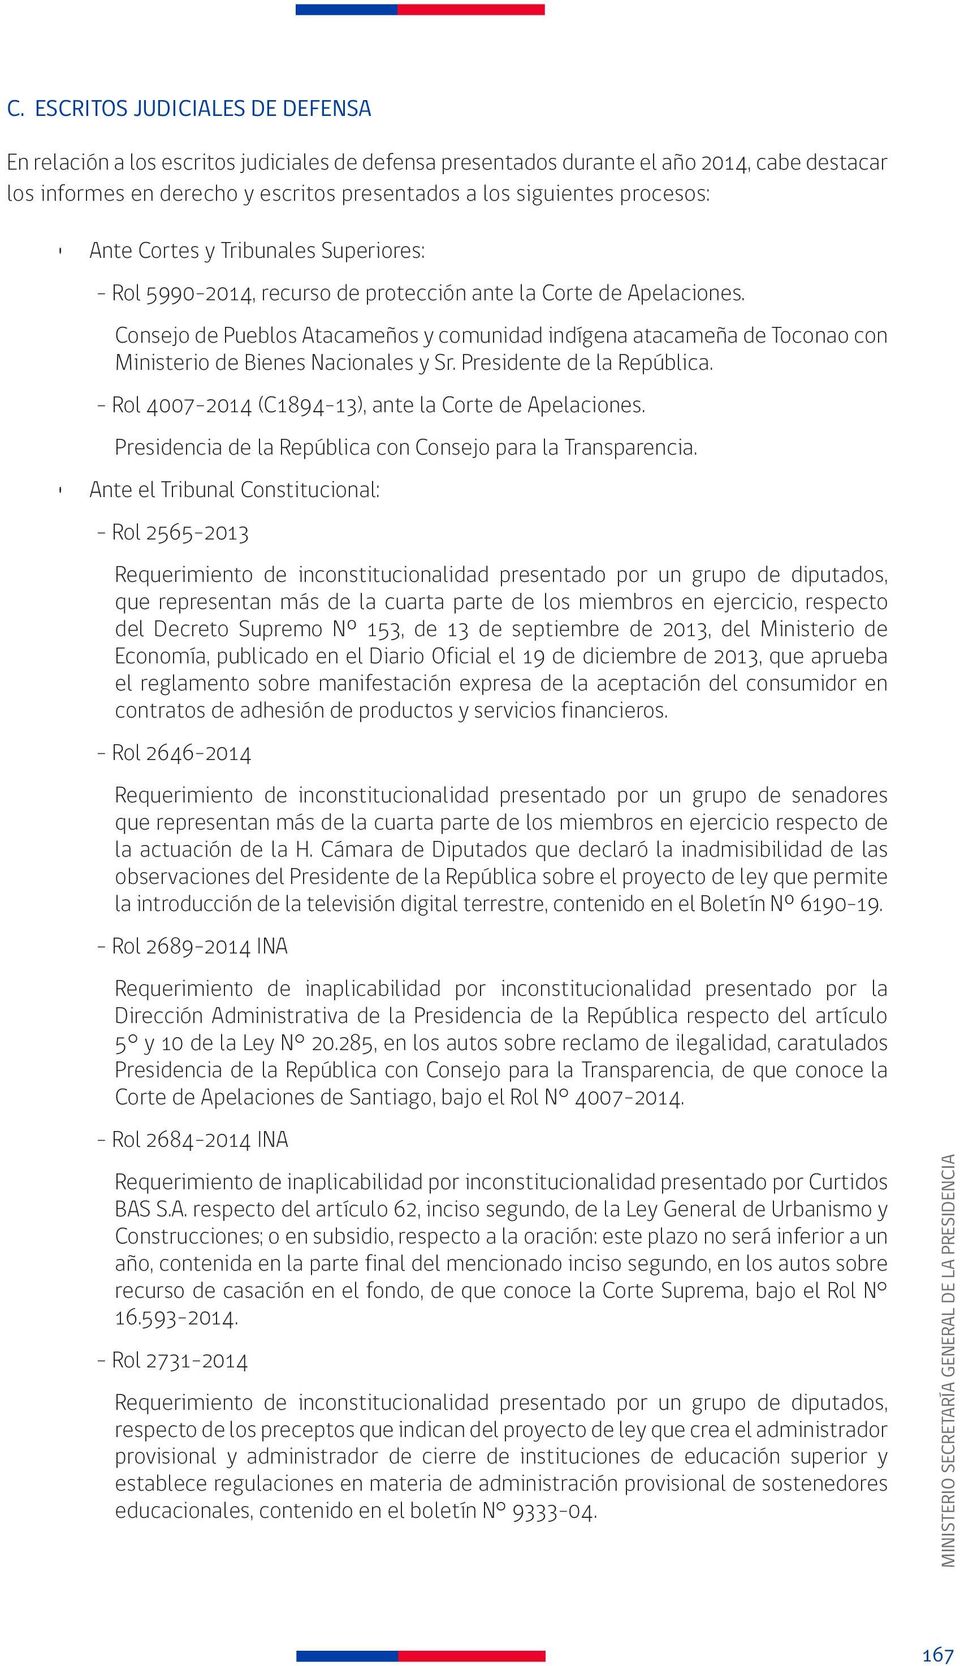 Consejo de Pueblos Atacameños y comunidad indígena atacameña de Toconao con Ministerio de Bienes Nacionales y Sr. Presidente de la República. - Rol 4007-2014 (C1894-13), ante la Corte de Apelaciones.